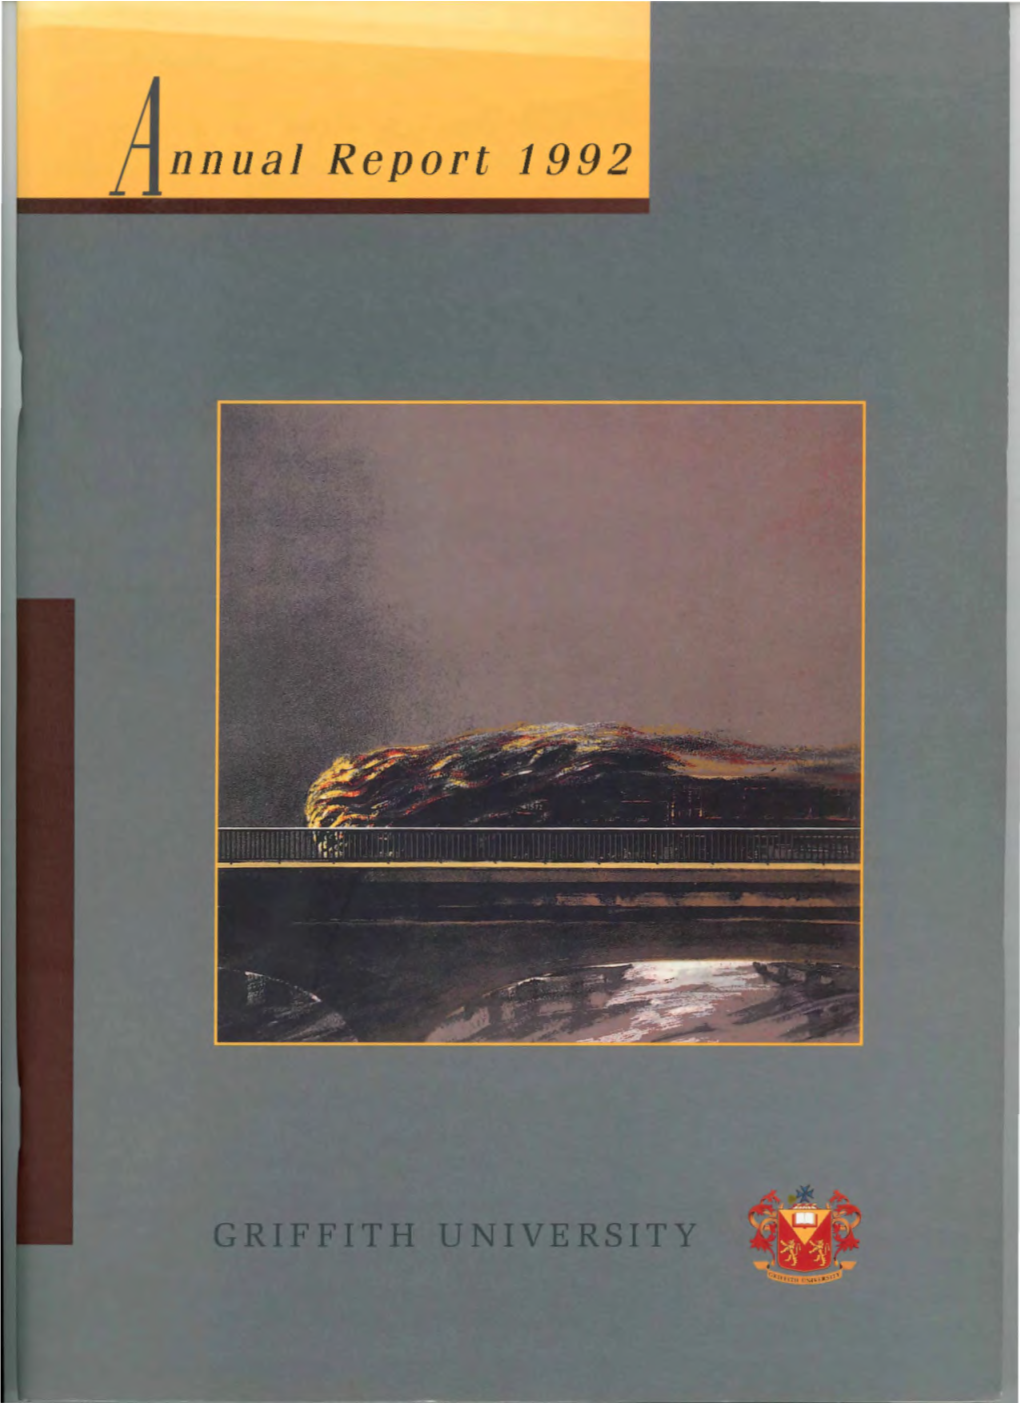 Nnual Report 1992